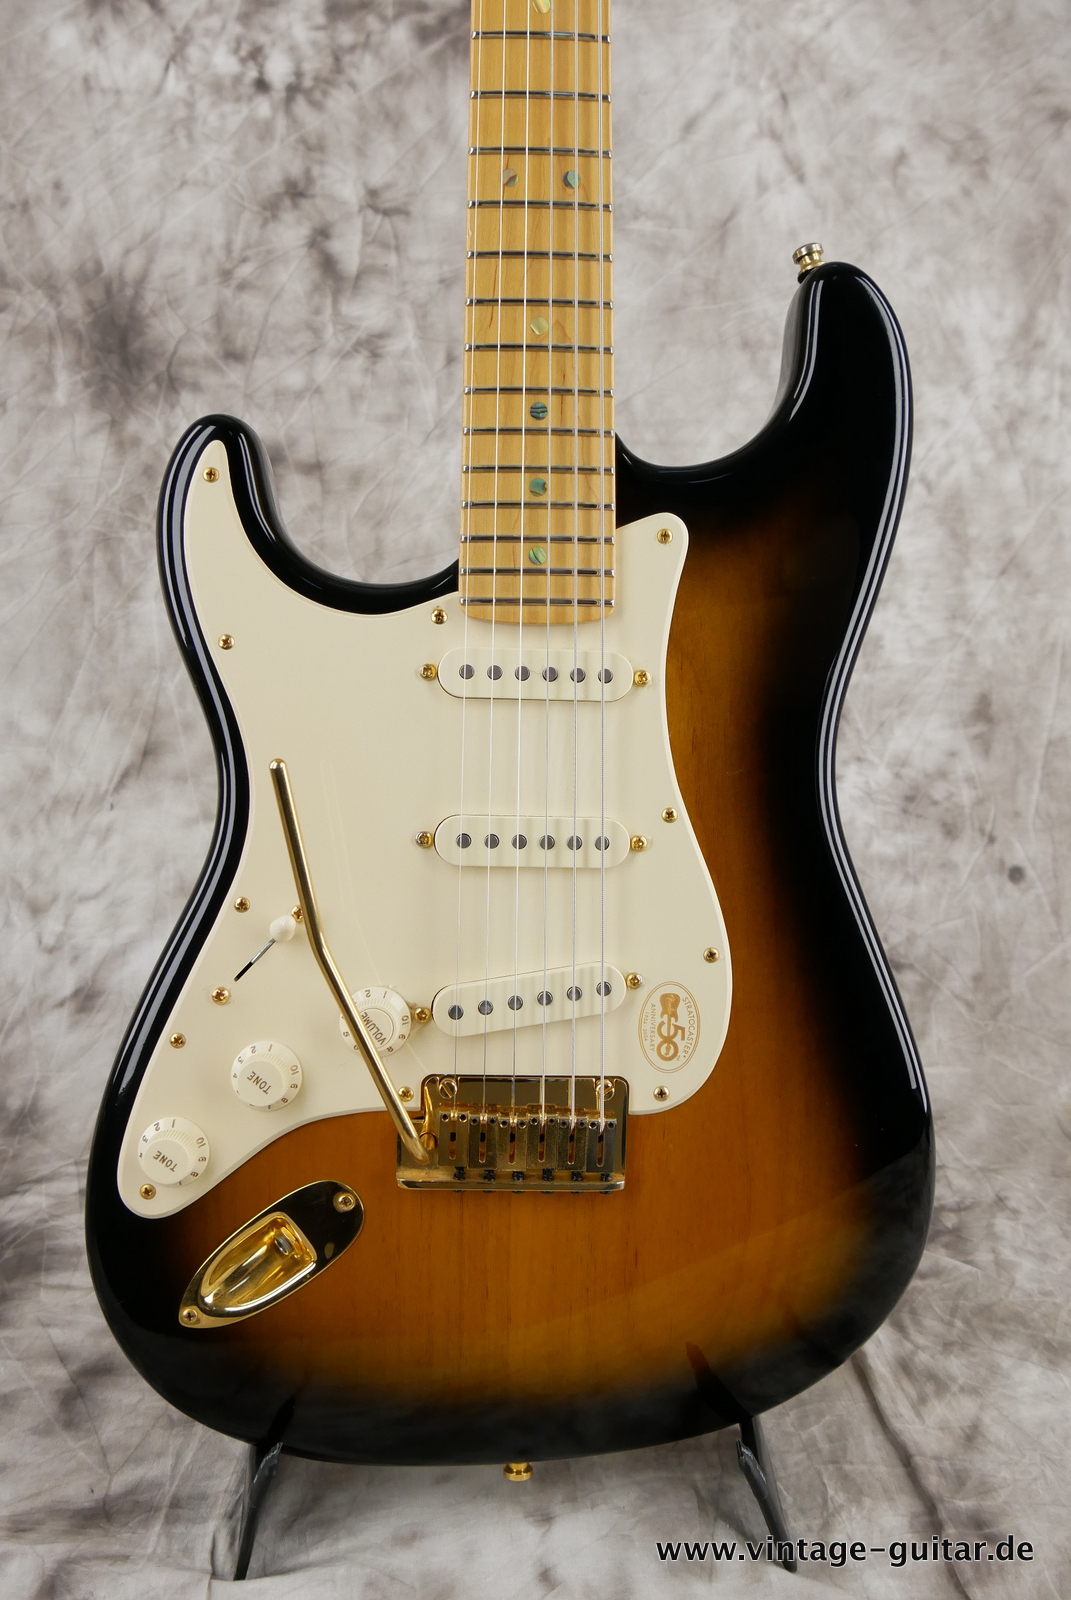 Fender_Stratocaster_deluxe_50th_anniversary__left_hand_sunburst_tweed_case_2004-007.JPG